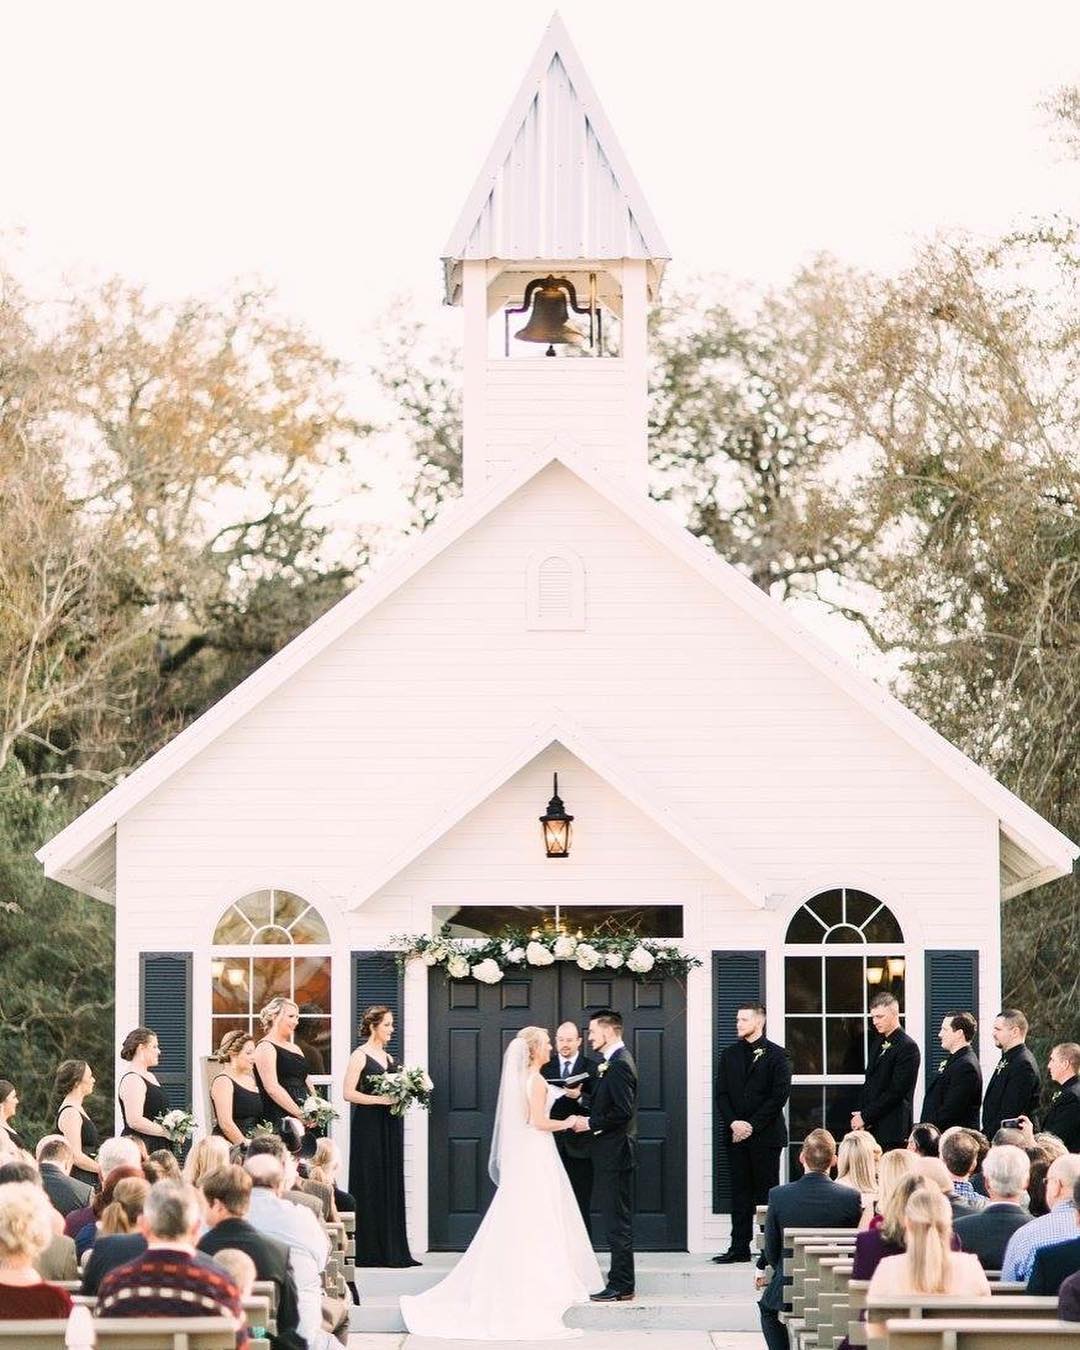 all-inclusive wedding venue in Texas | Beneath the Oaks